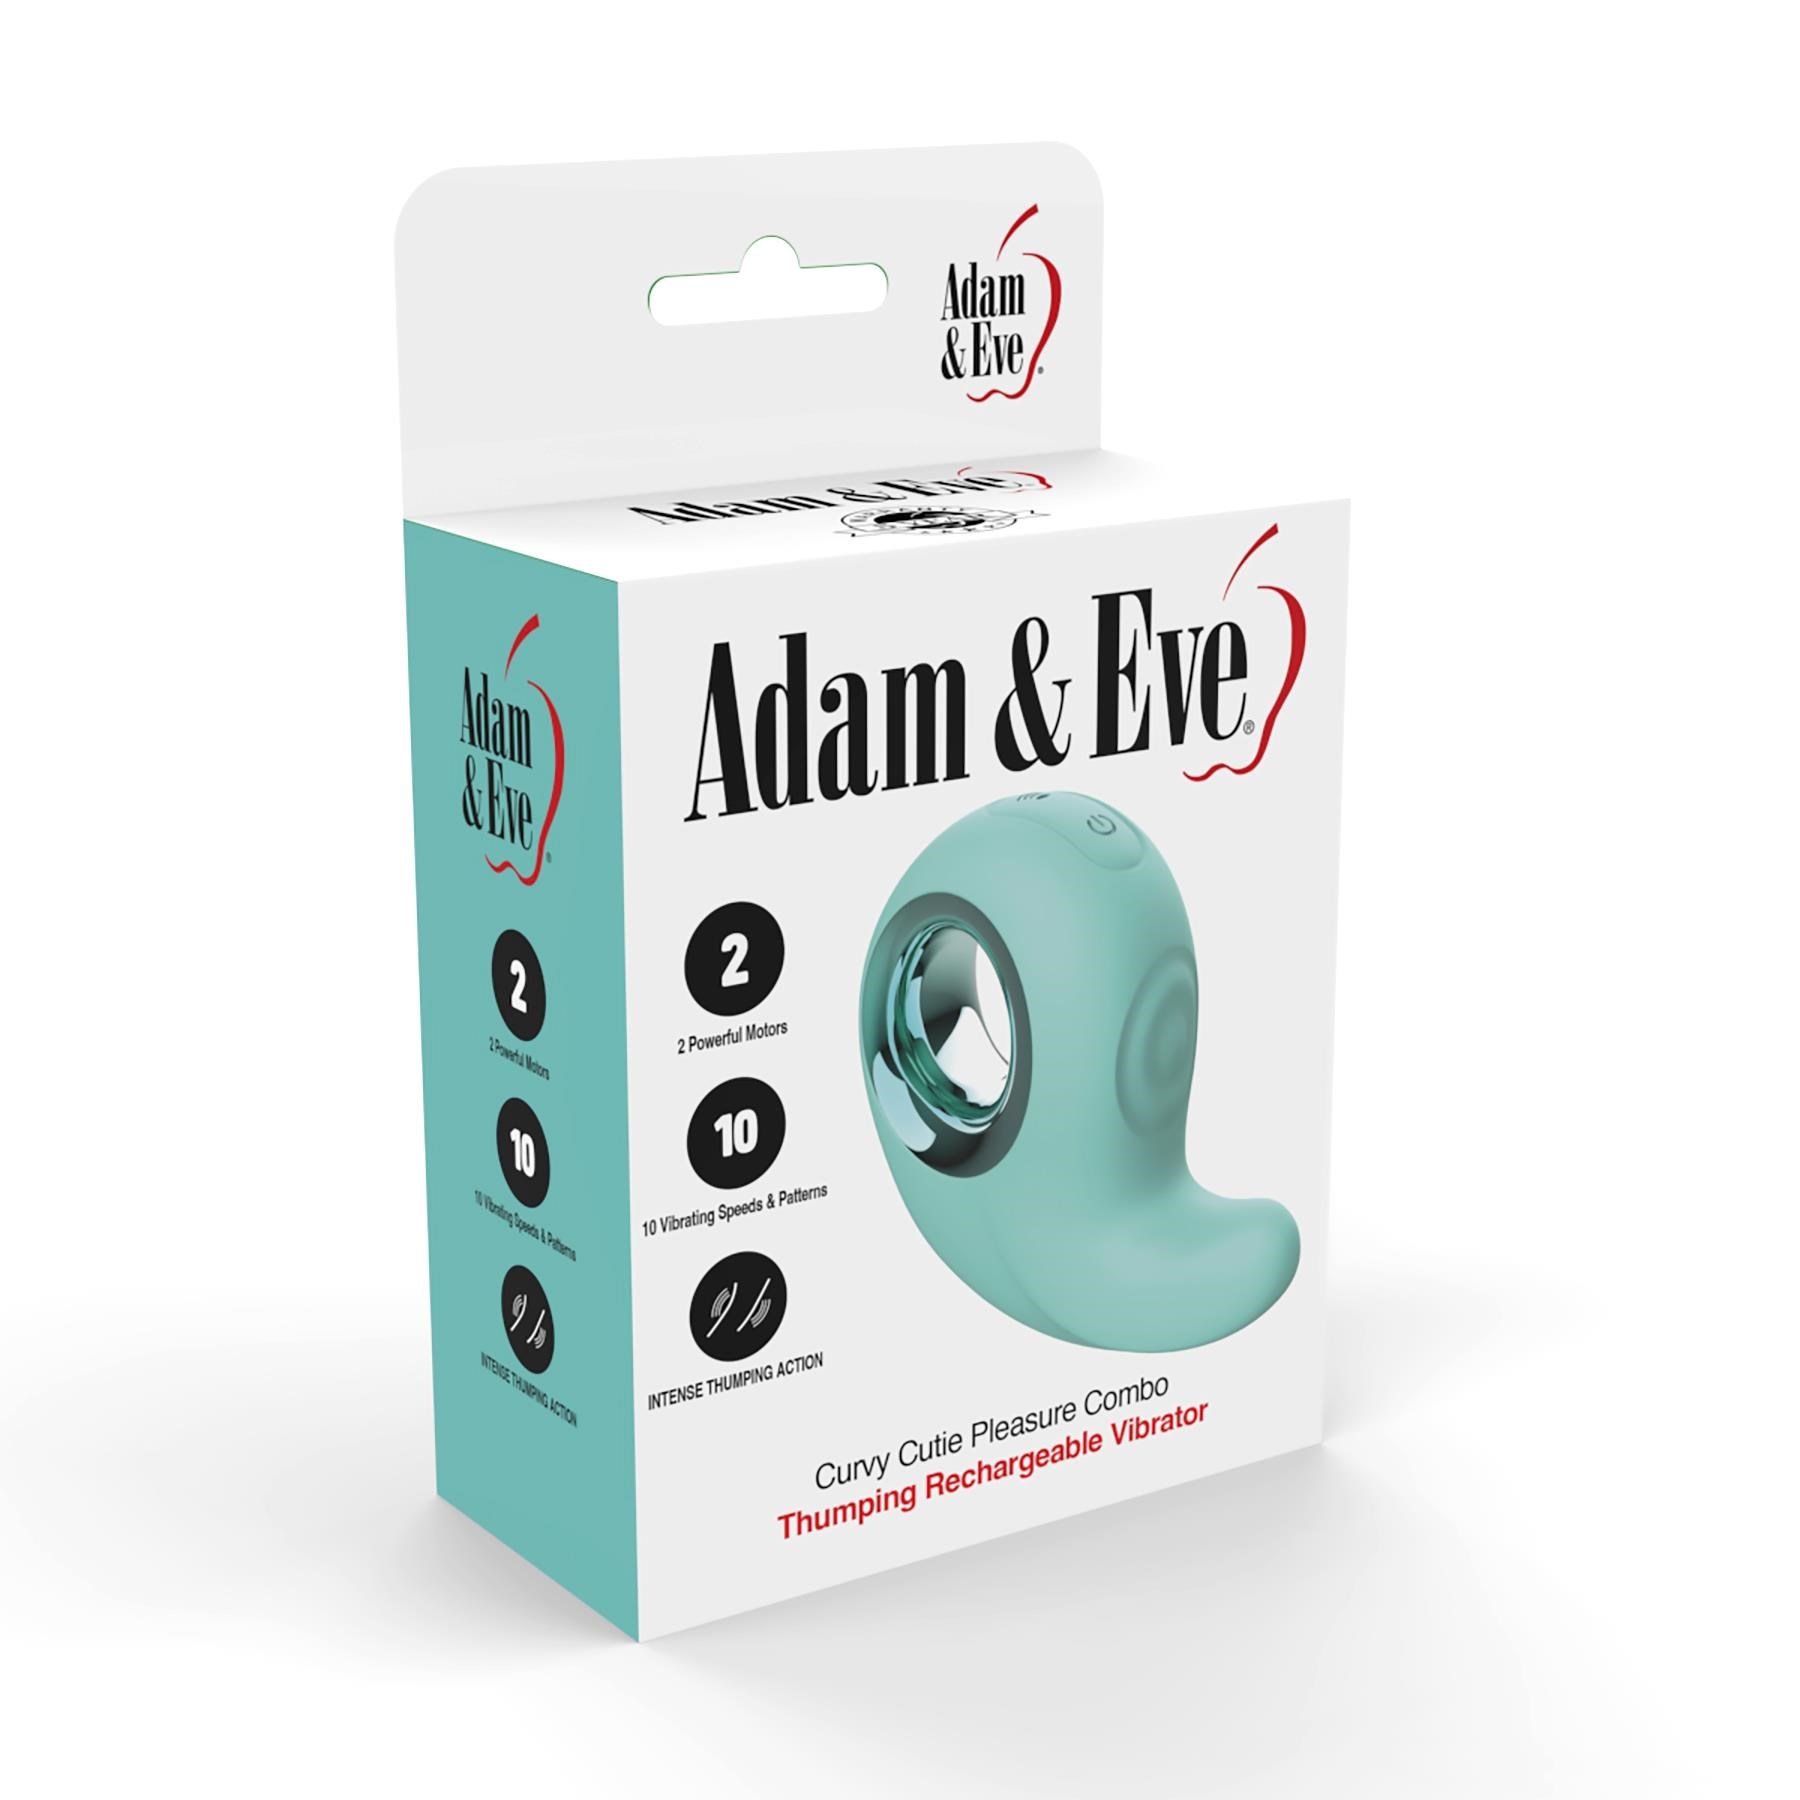 Adam & Eve Curvy Cutie Pleasure Combo - Packaging